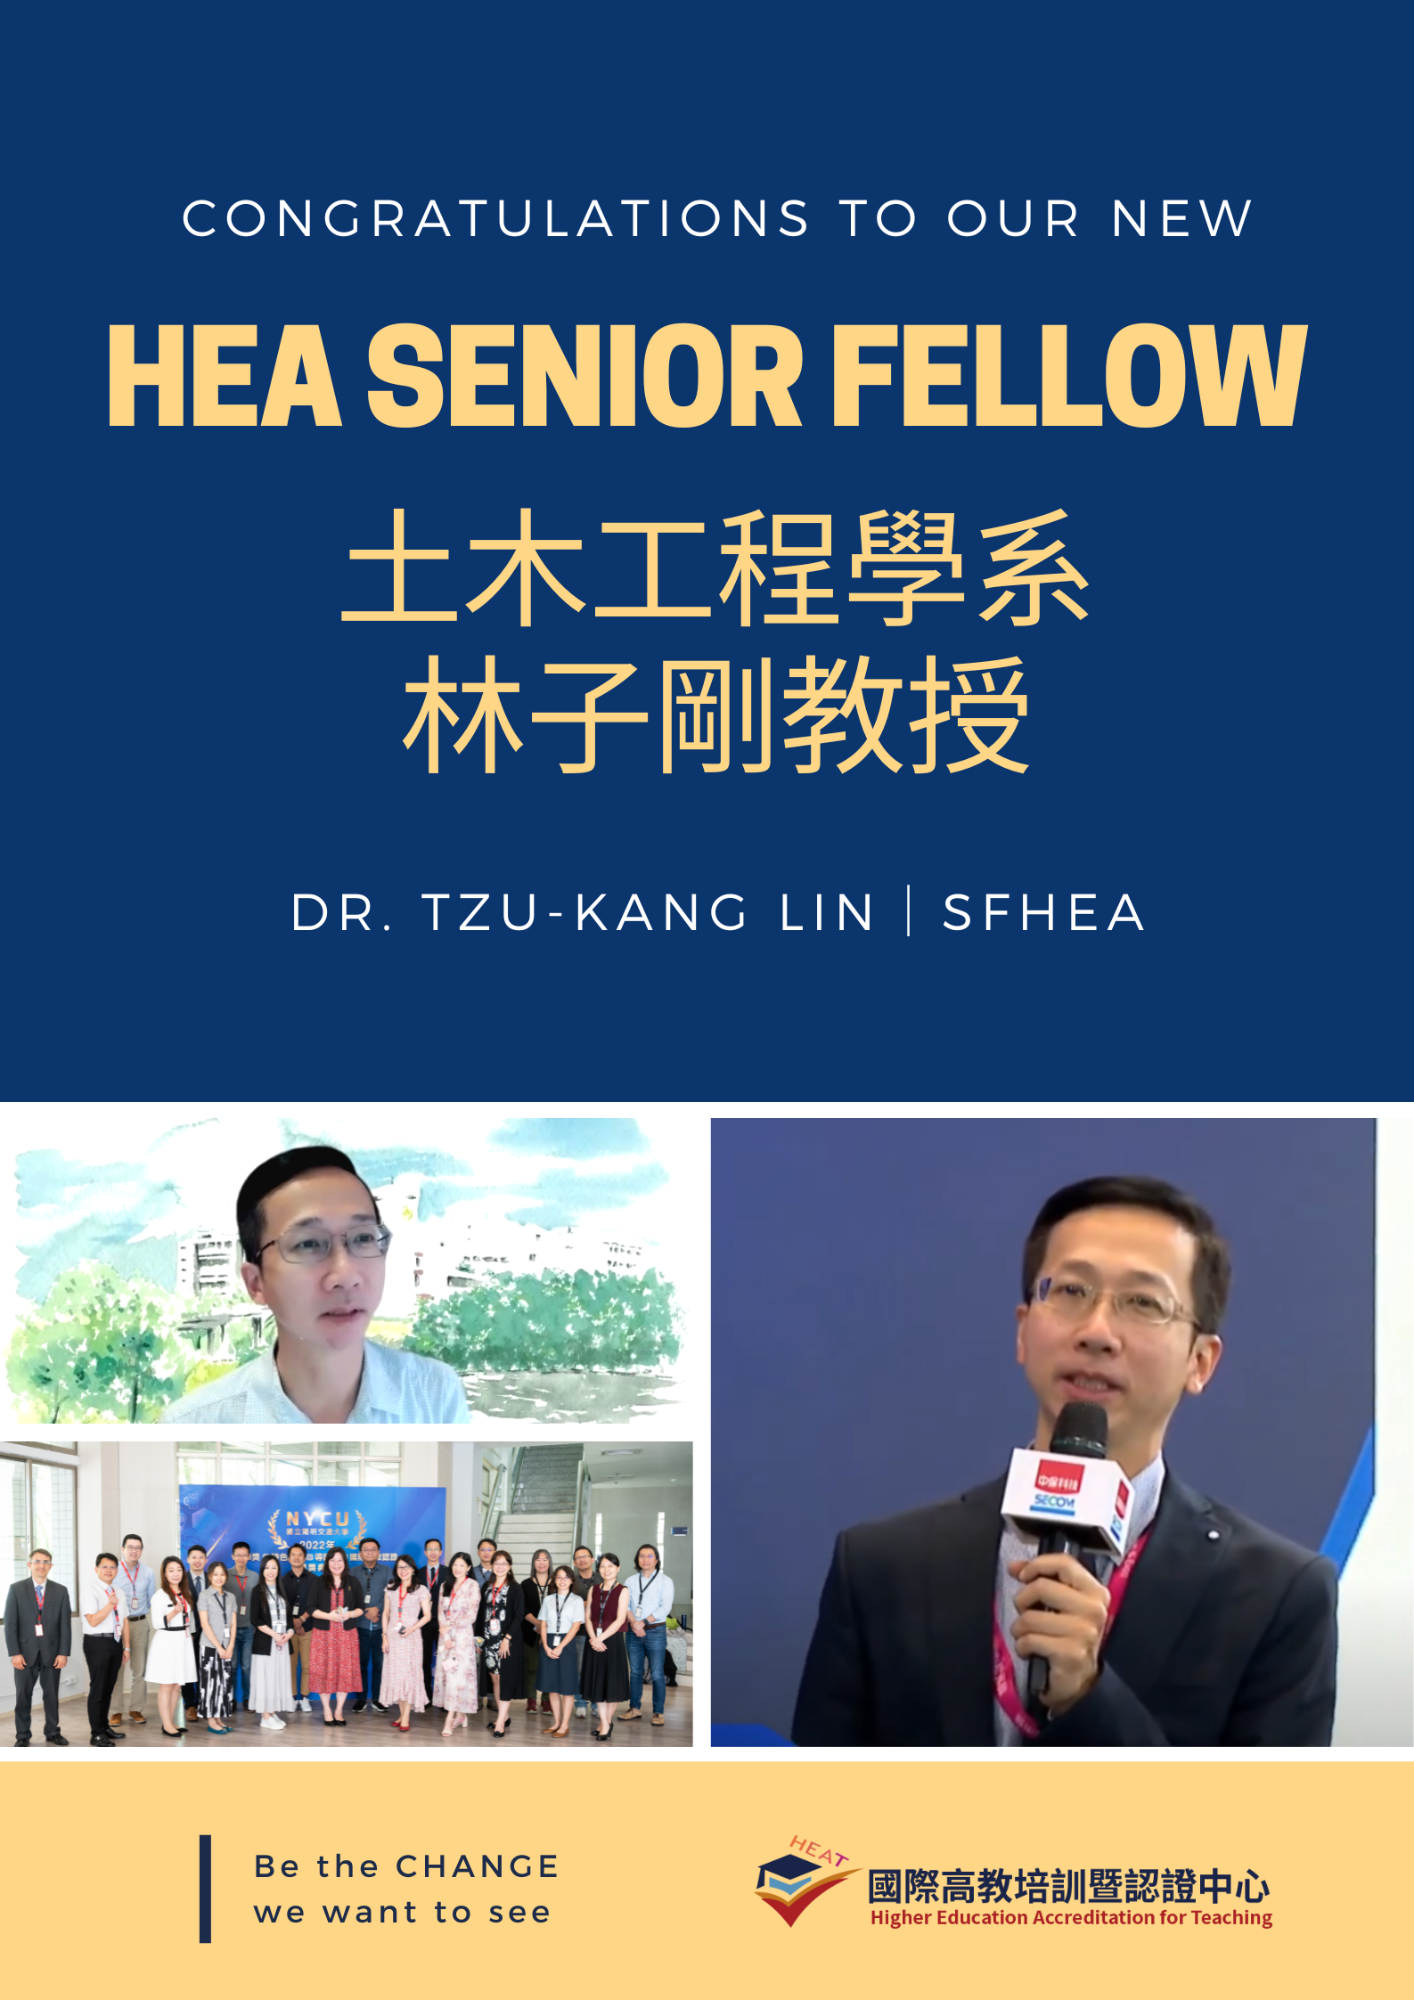 Congratulations to our new HEA Senior Fellow ─Prof. Tzu-Kang Lin!!